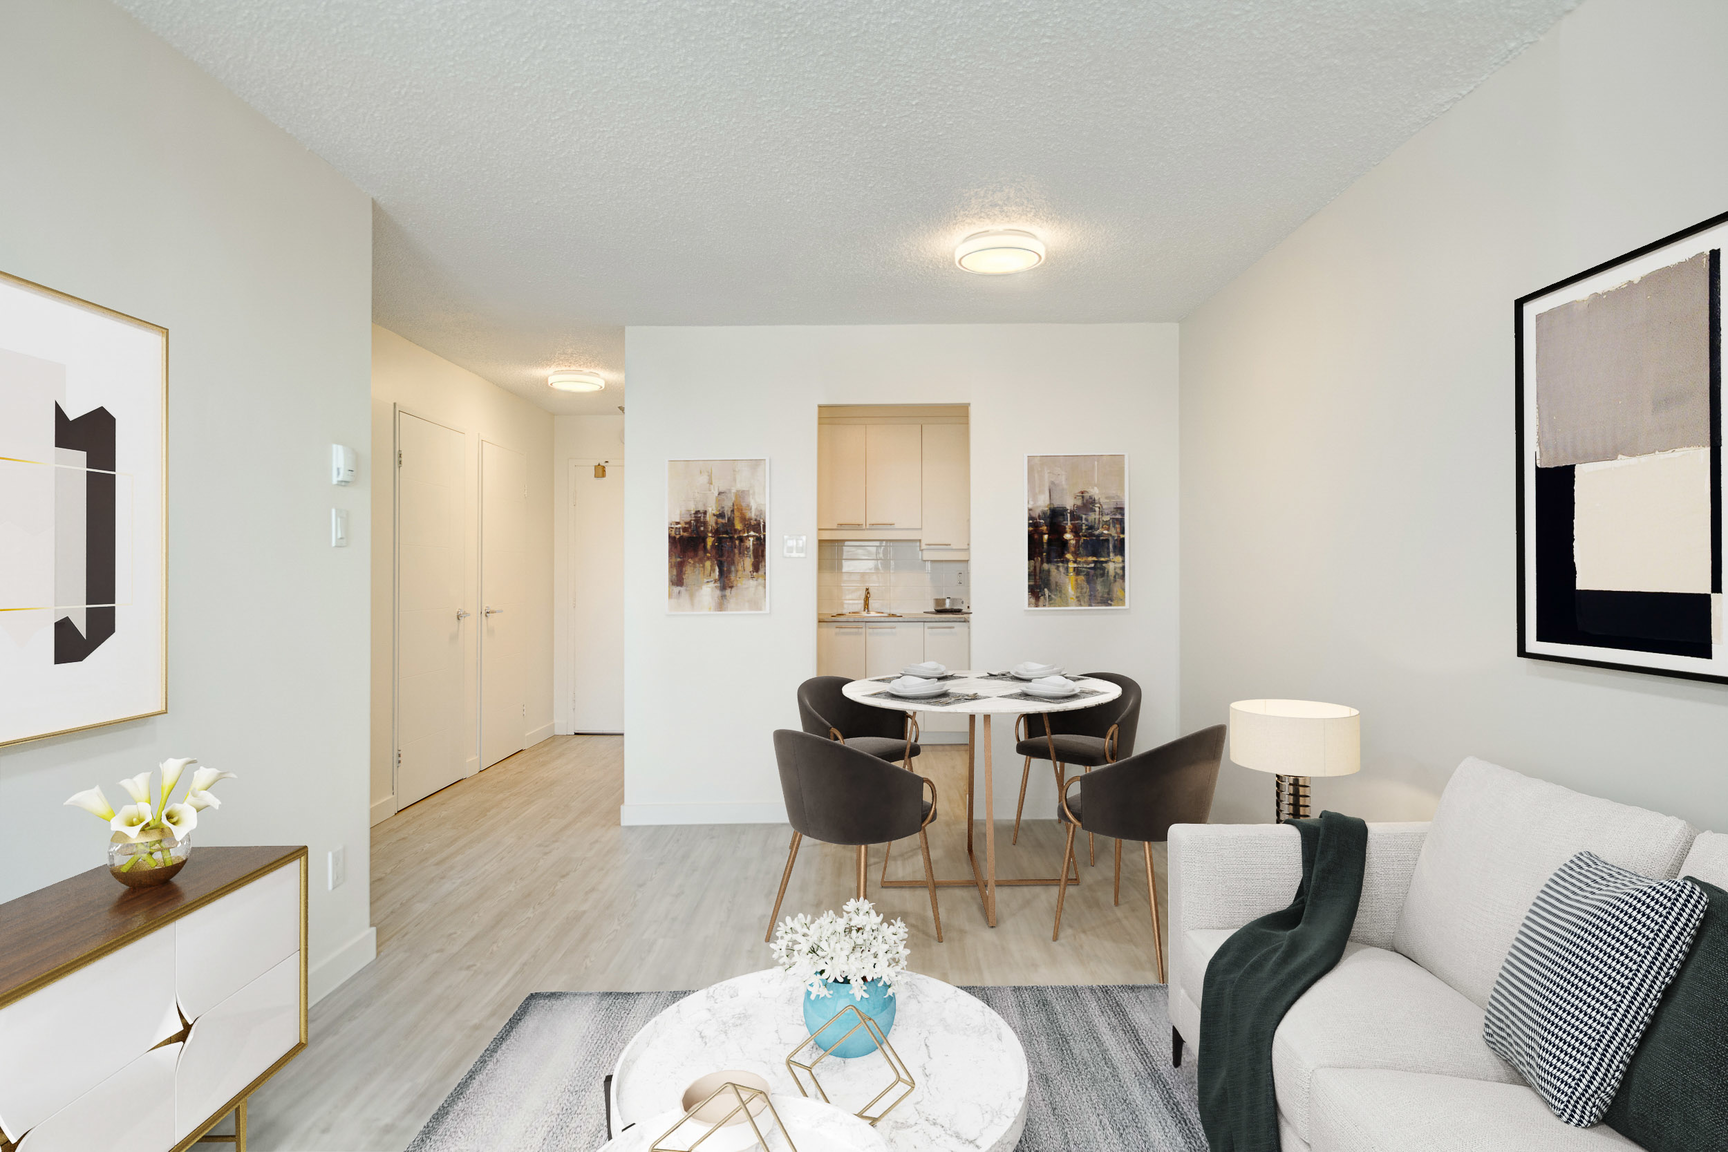 Studio / Bachelor Apartments for rent in Laval at Le Quatre Cent - Photo 01 - RentersPages – L407182